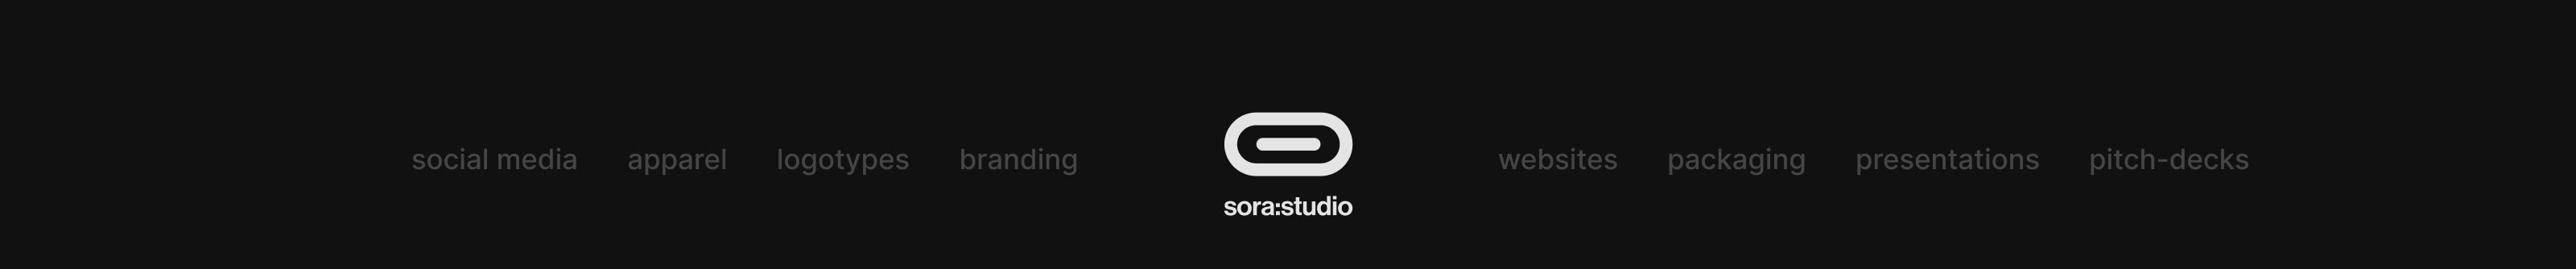 Sora Studio profil başlığı